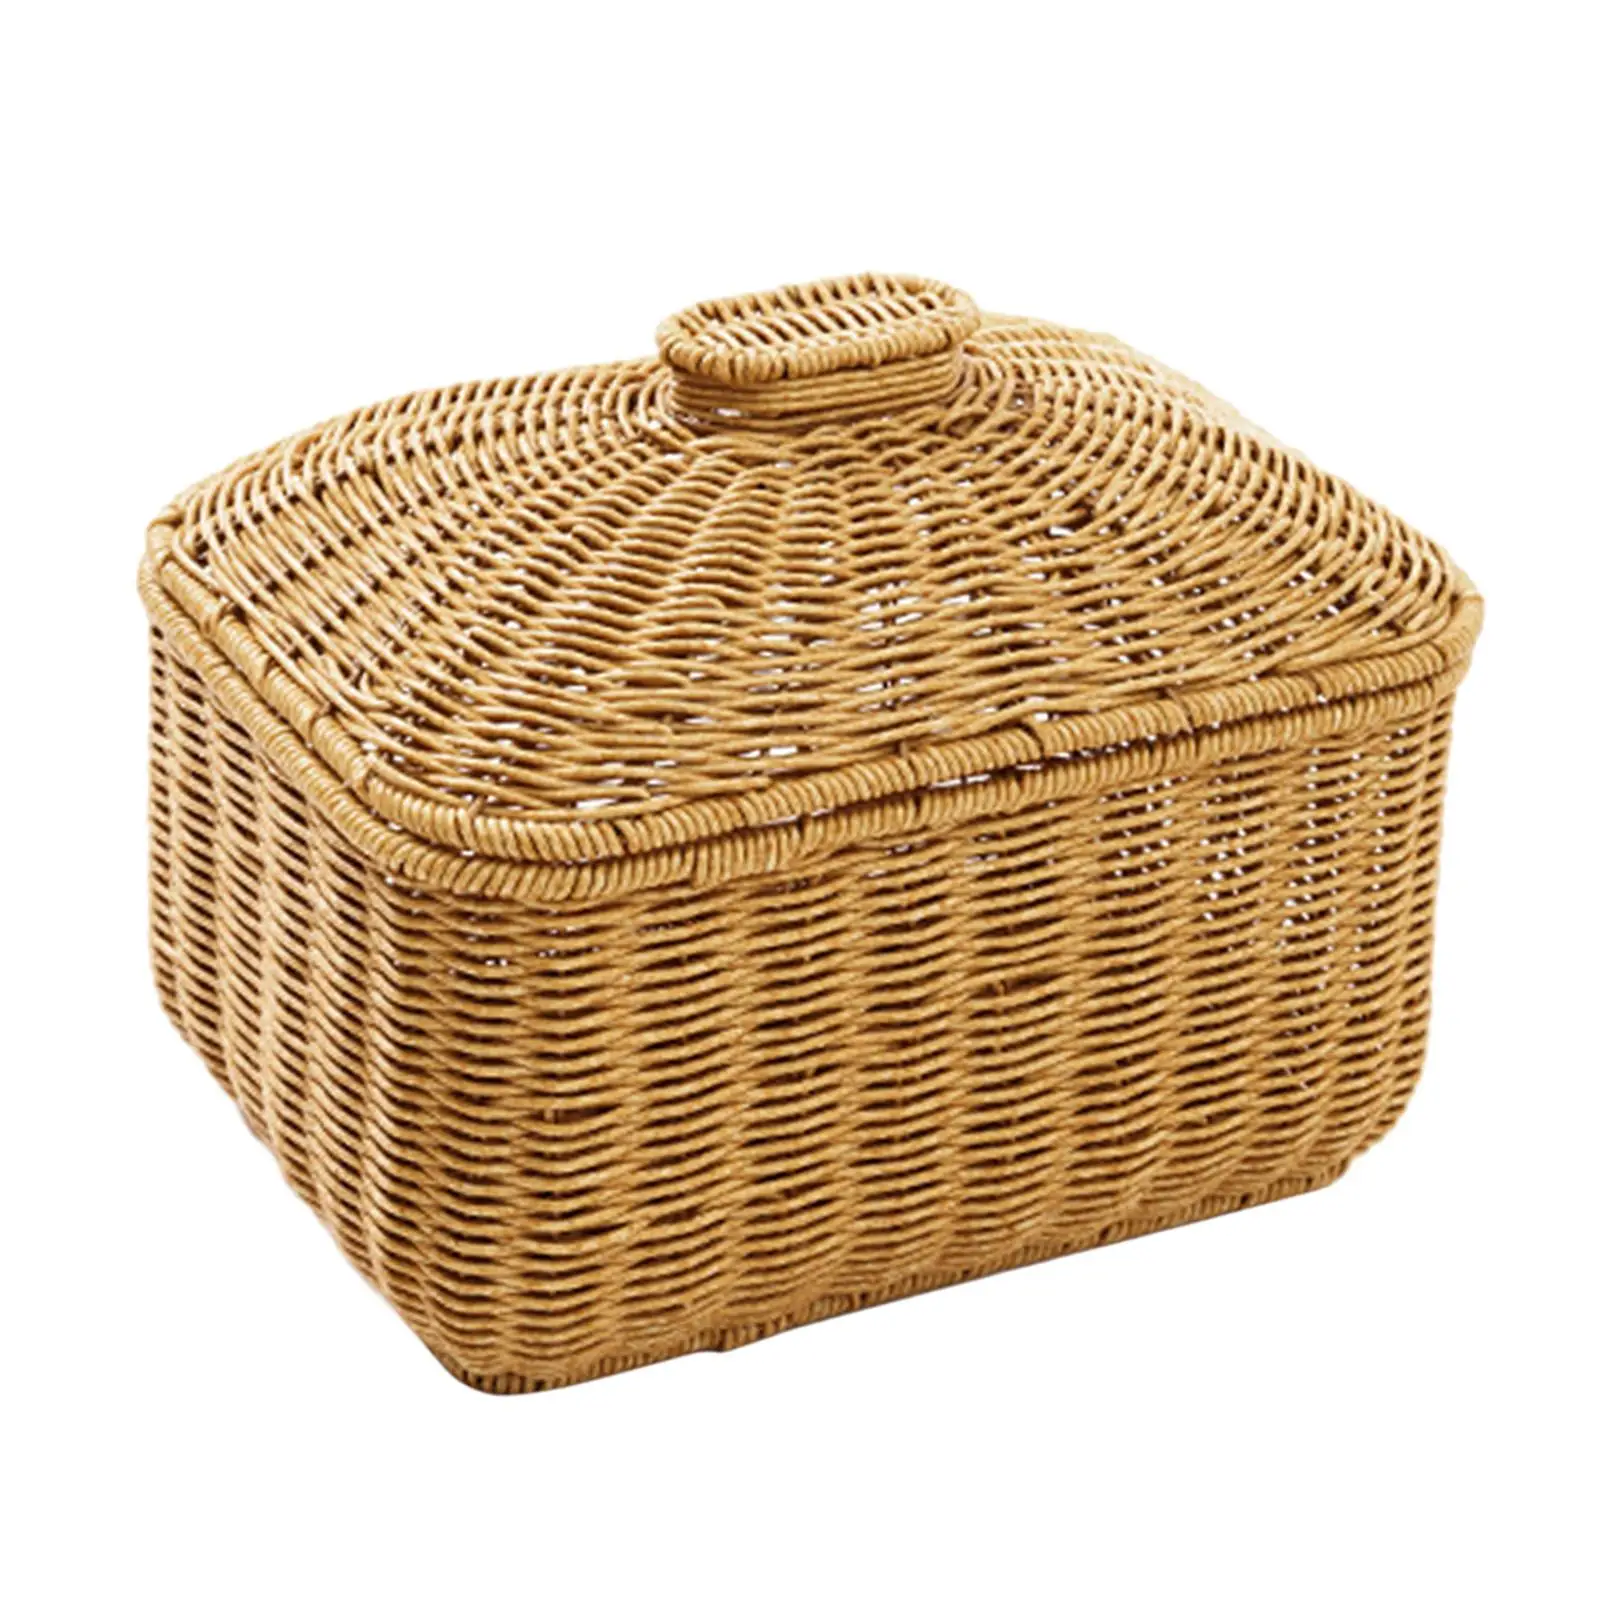 Hand Woven Basket Farmhouse Candy Serving Basket Bread Fruit Basket for Shelves Kitchen Restaurant Bathroom Living Room